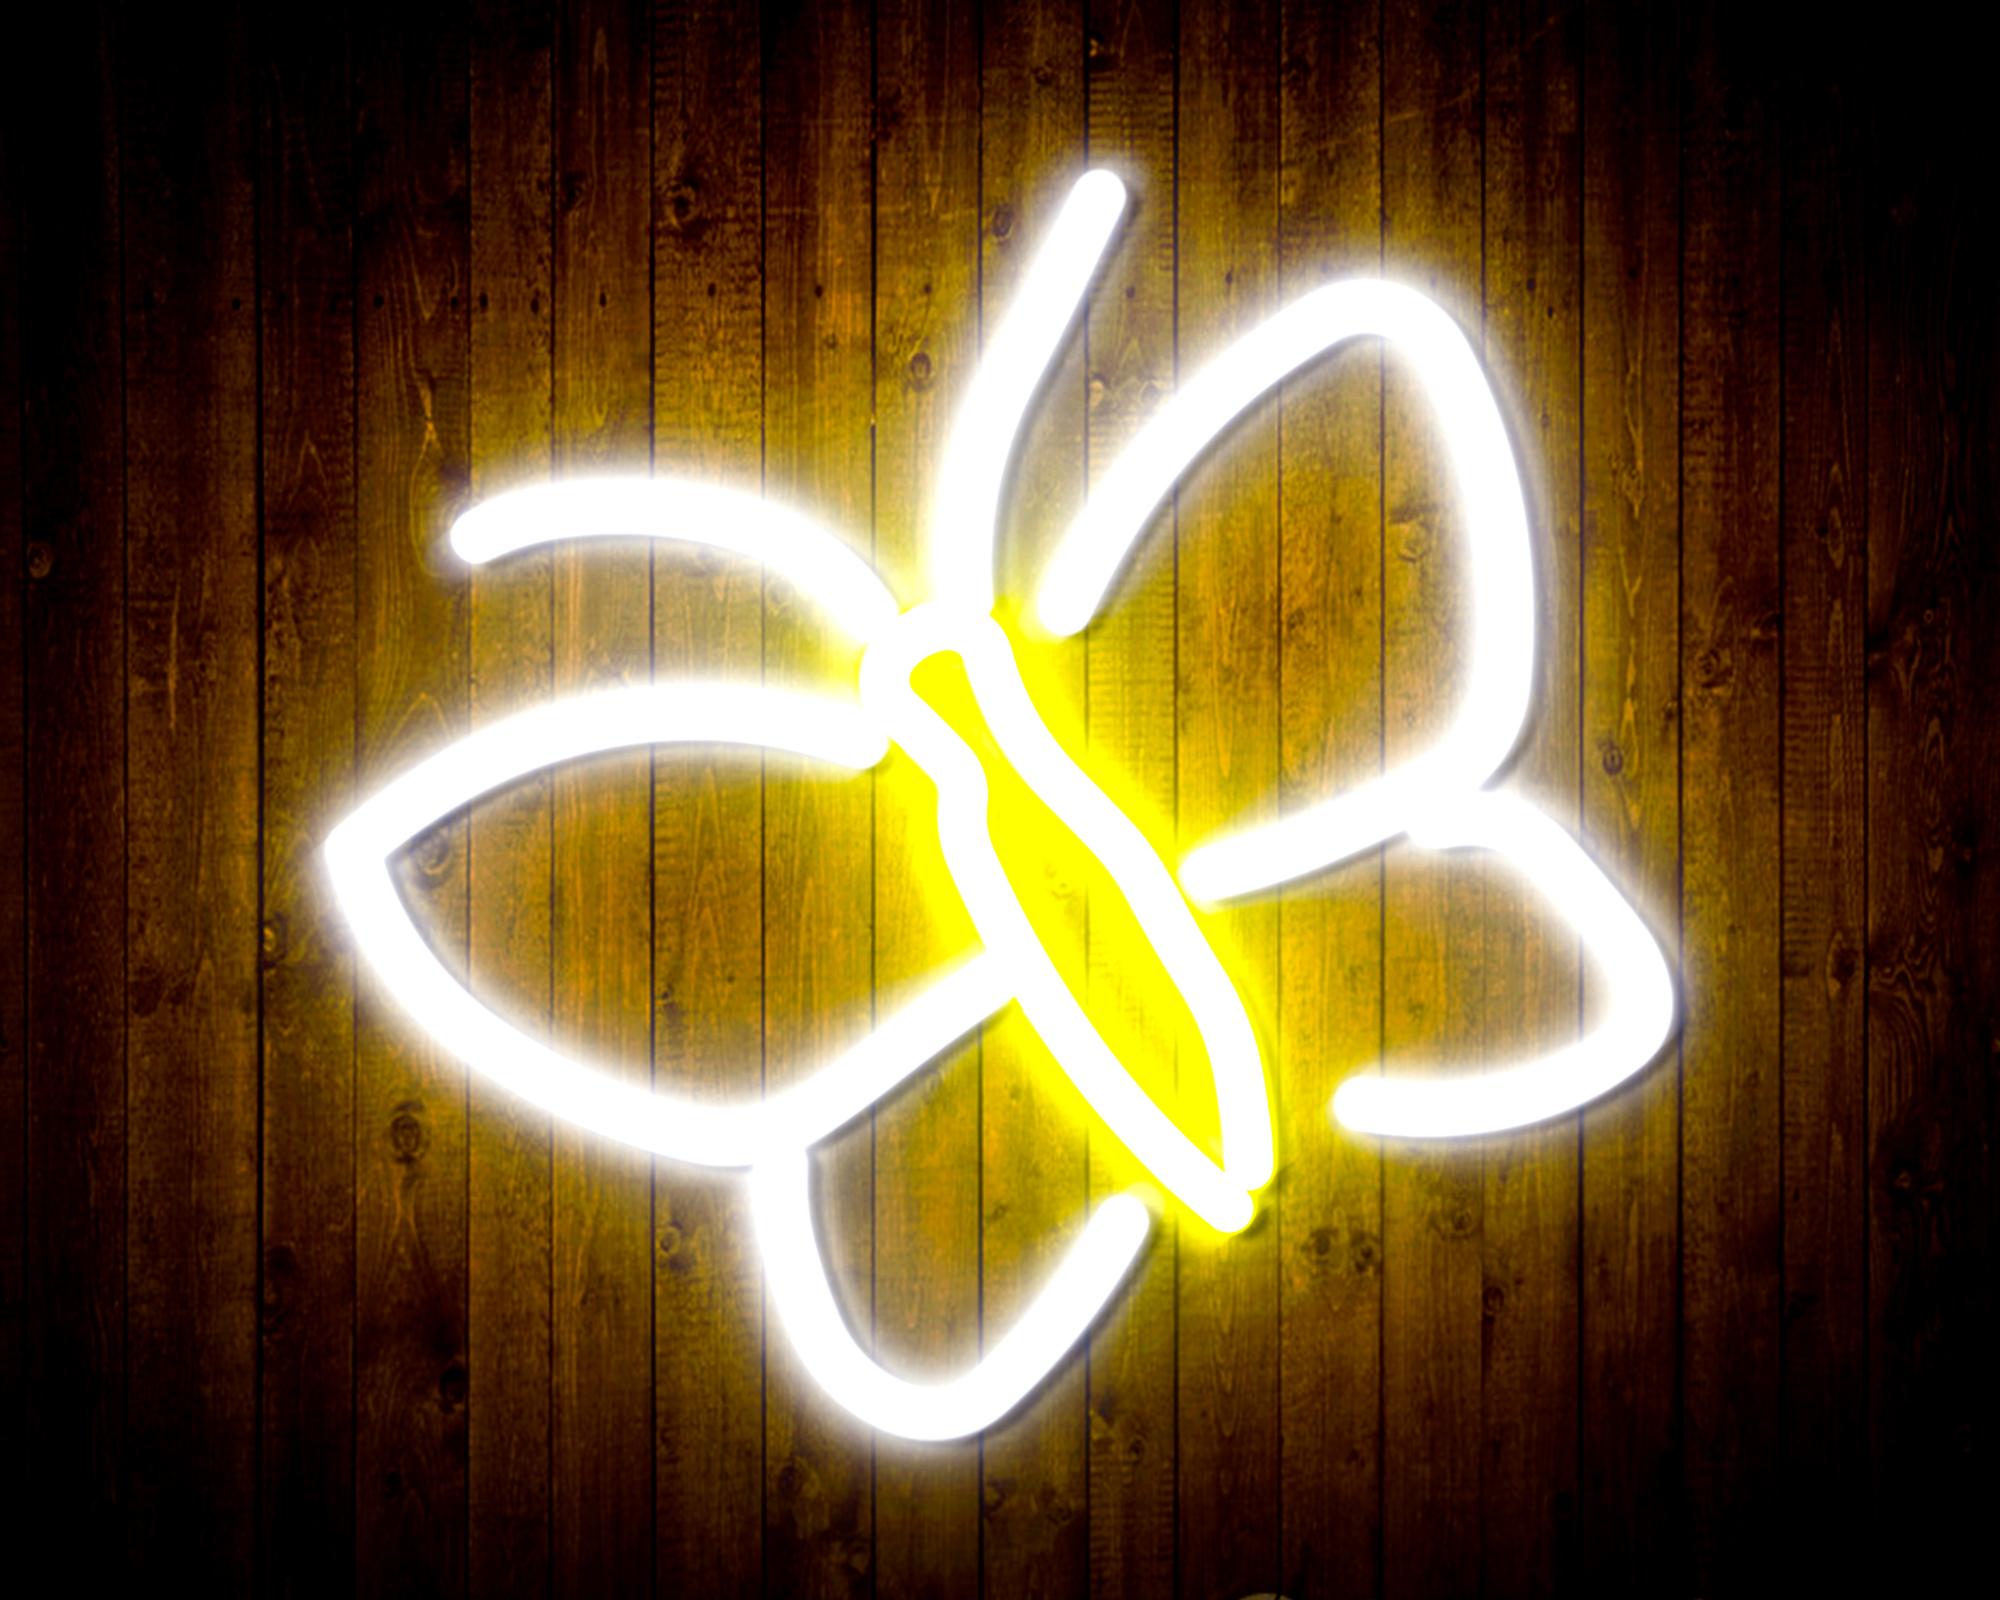 Butterflies LED Neon Sign Wall Light